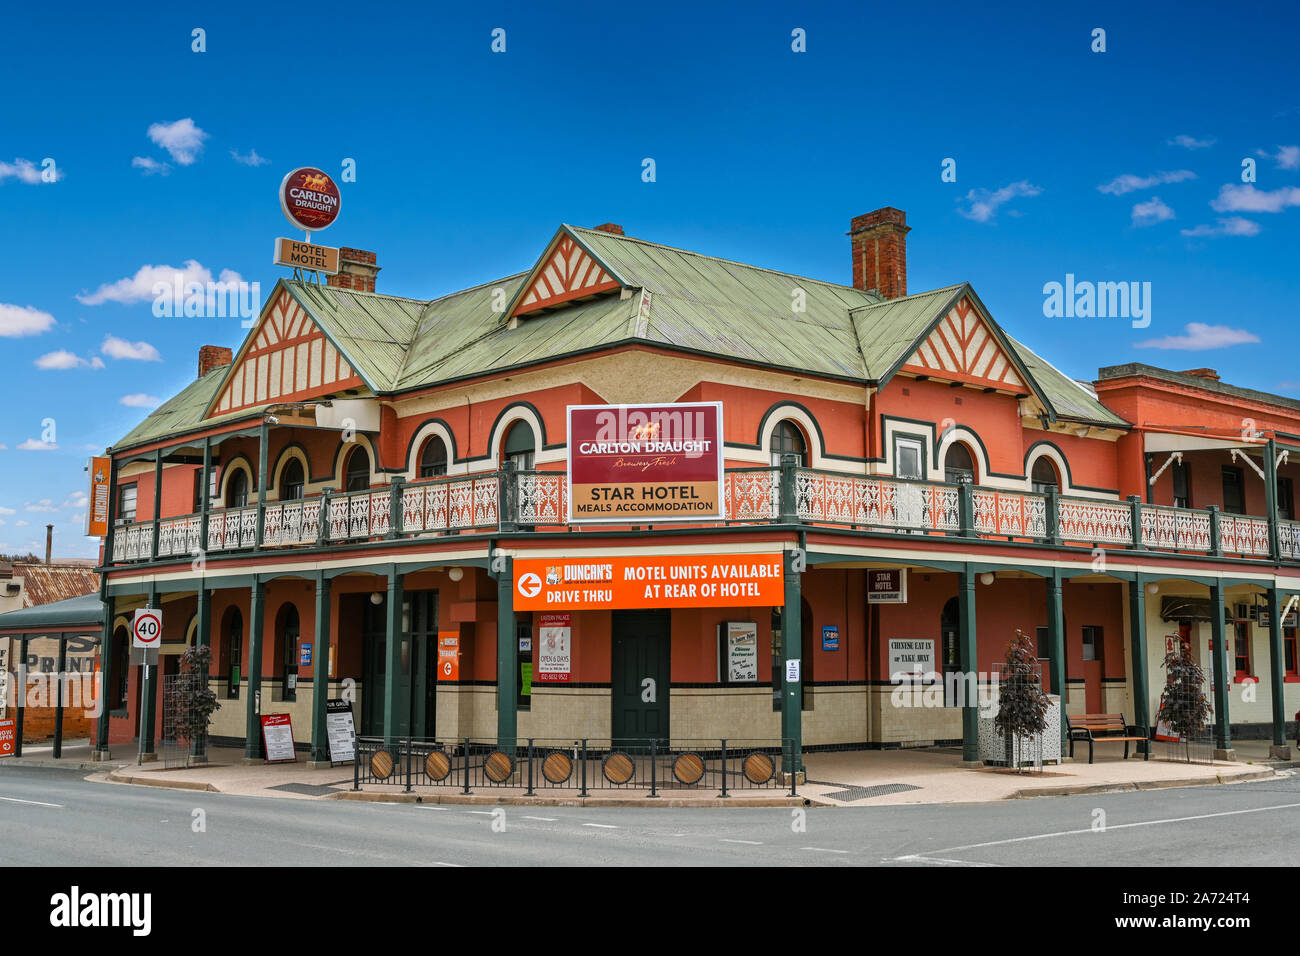 L'extérieur de l'ancien pub à Wilberforce, Victoria, Australie. Édité numériquement (lignes électriques retirés de sky) Banque D'Images